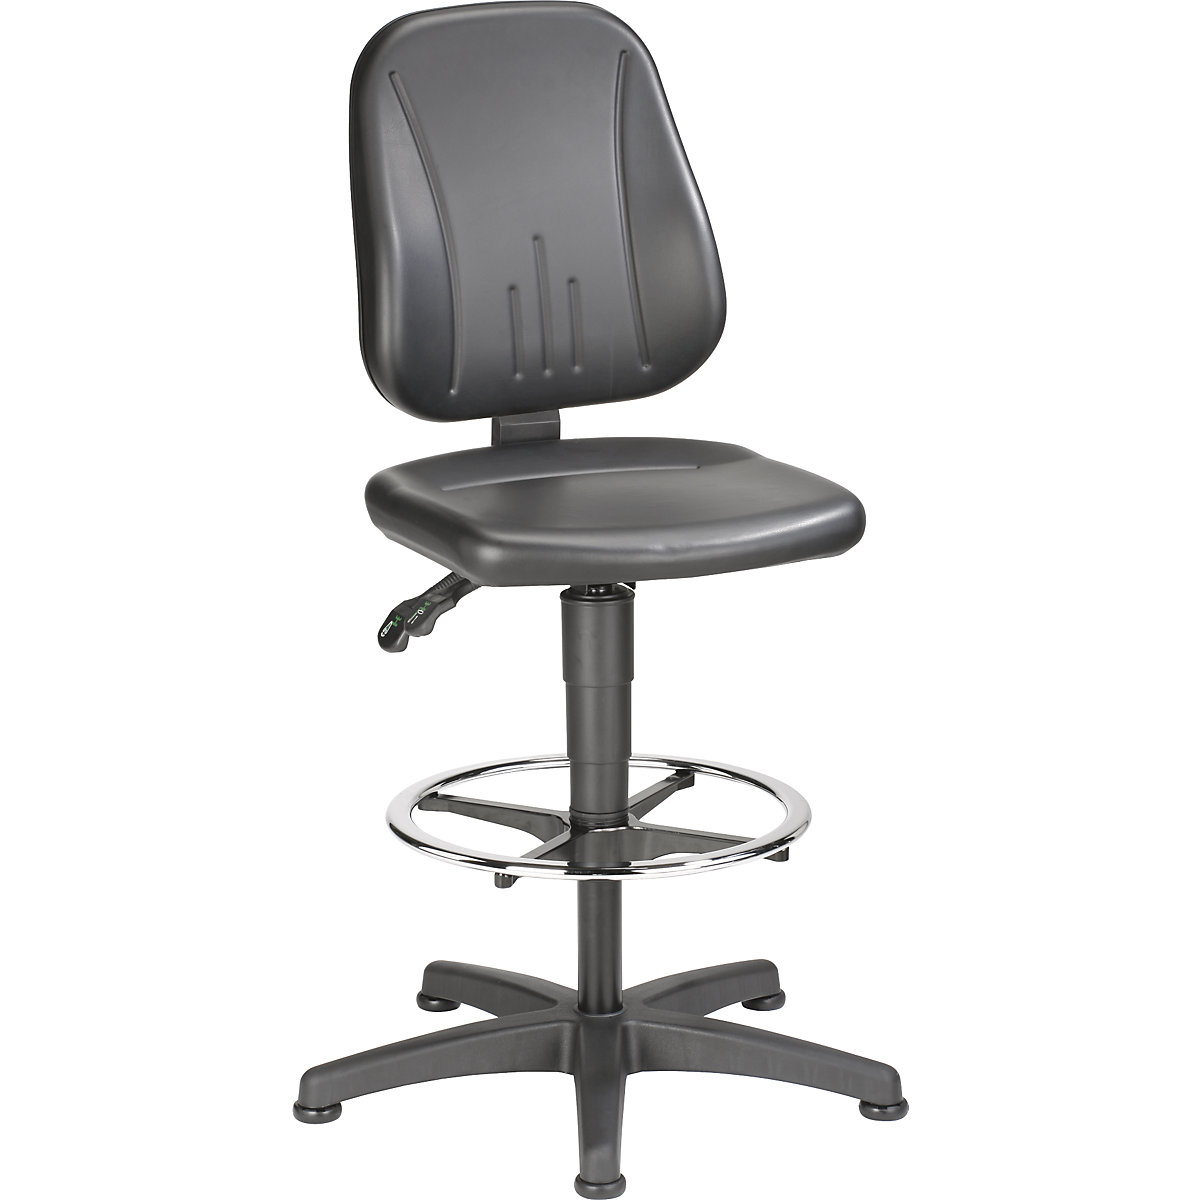 Pracovní otočná židle – bimos, s přestavováním výšky plynovým pístem, koženkový potah, černá, s podlahovými patkami a nožním kruhem-5